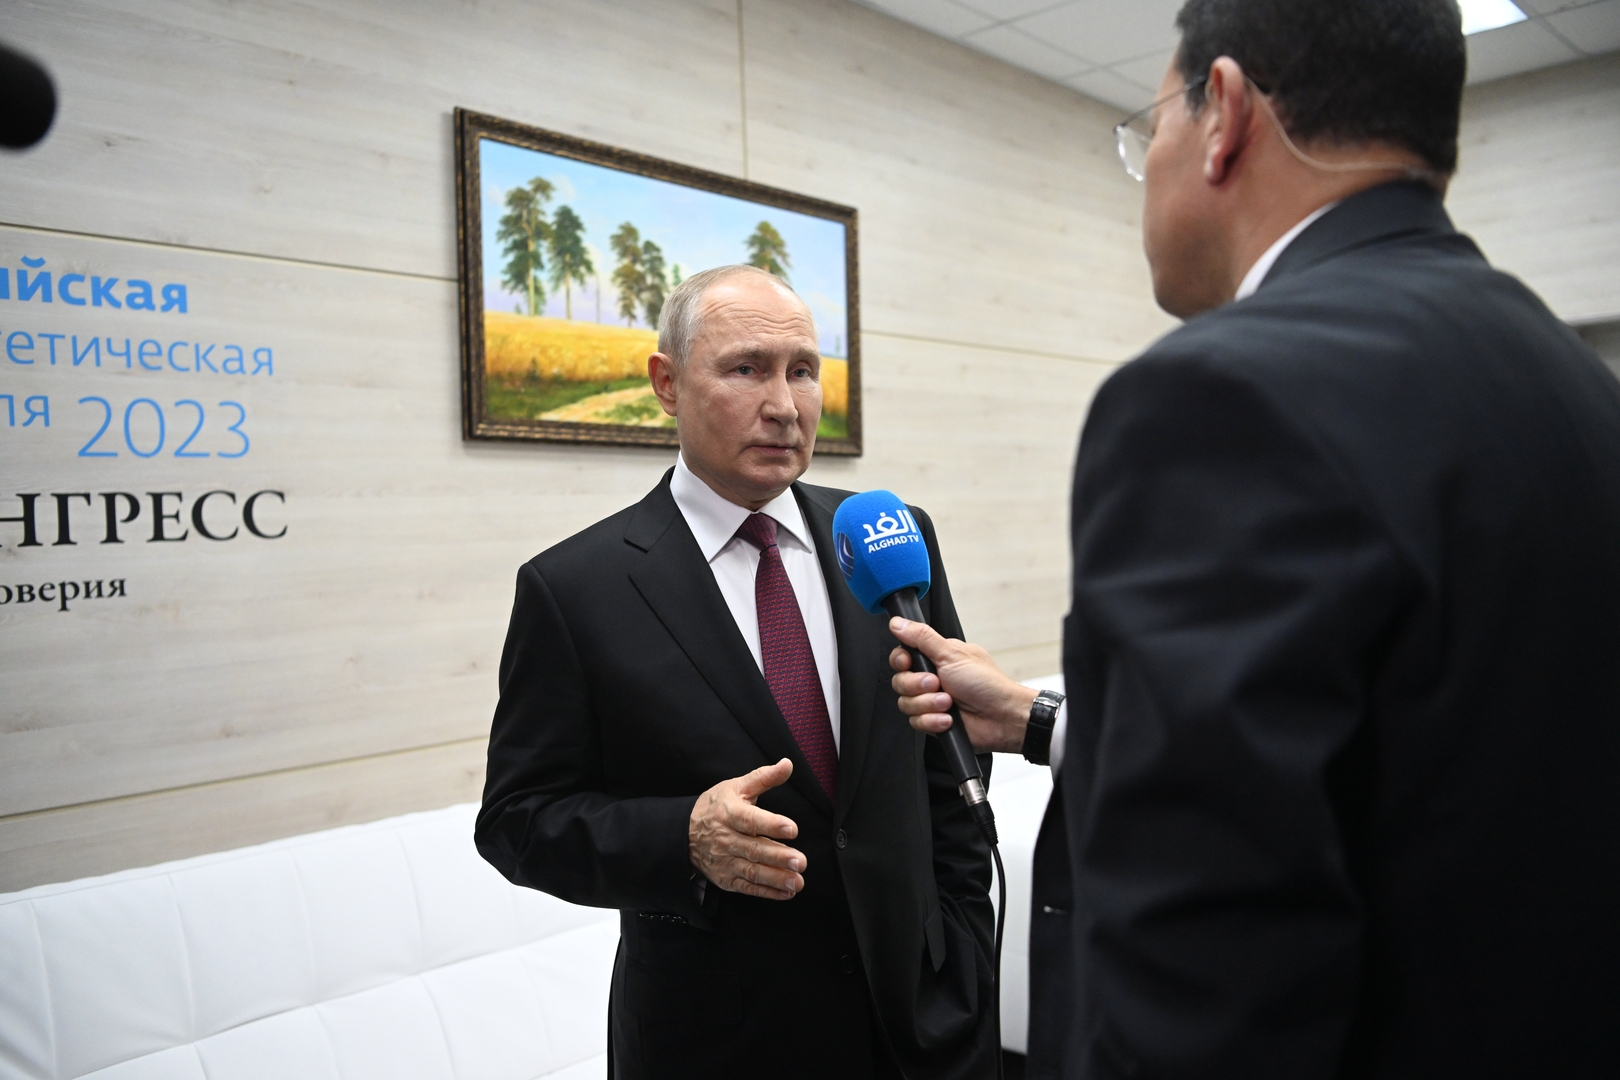 بوتين: بوسع روسيا أن تسهم في تسوية النزاع في الشرق الأوسط